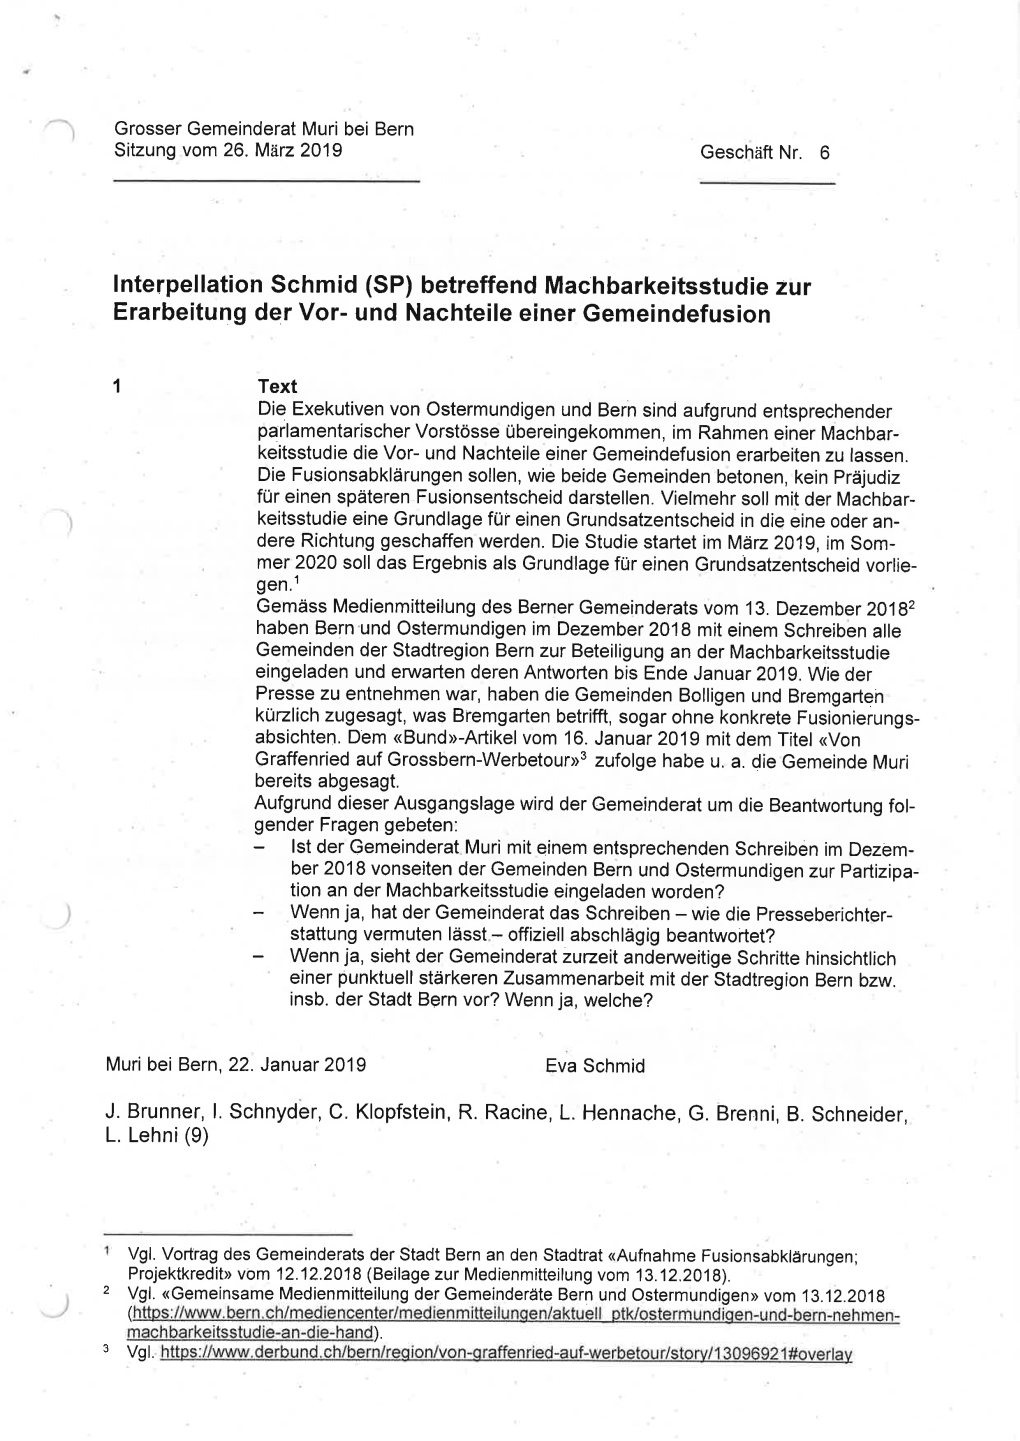 Lnterpellation Schmid (SP) Betreffend Machbarkeitsstudie Zur Erarbeitung Der Vor- Und Nachteile Einer Gemeindefusion